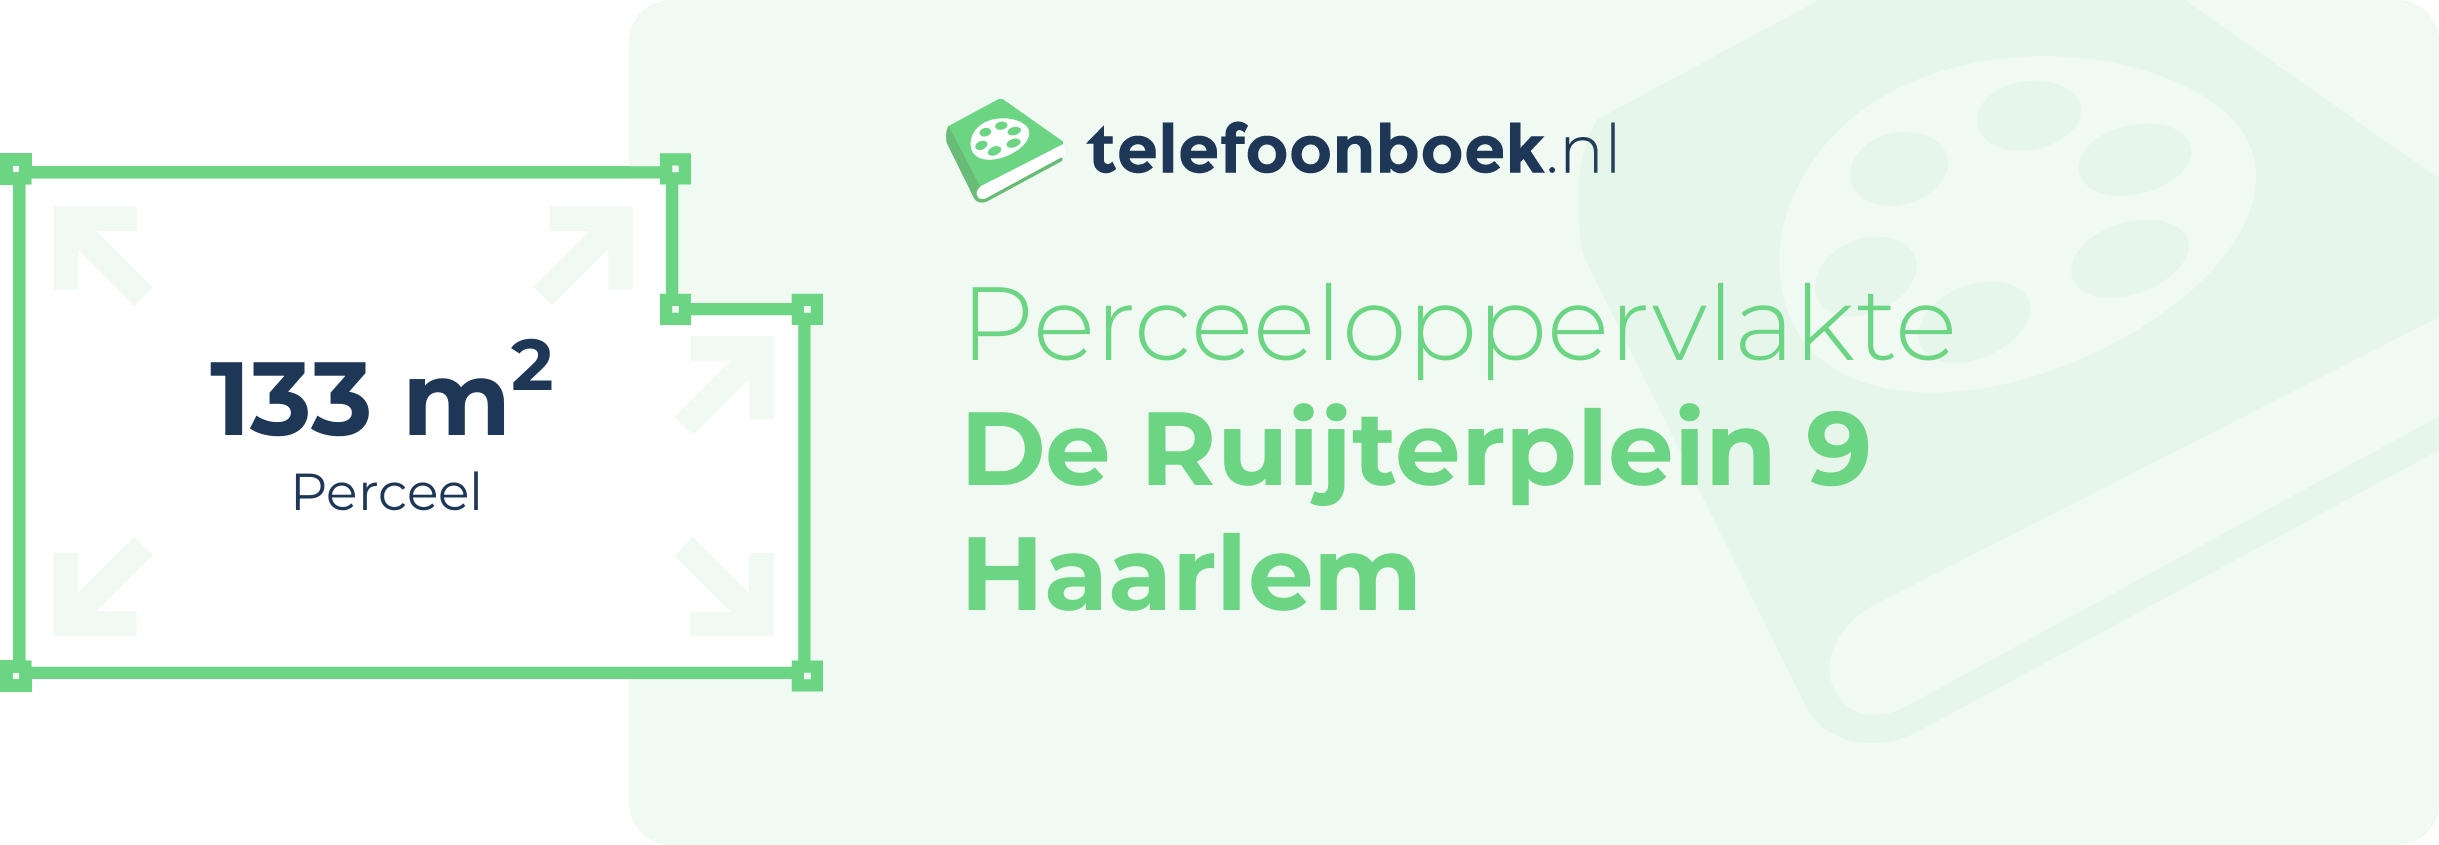 Perceeloppervlakte De Ruijterplein 9 Haarlem